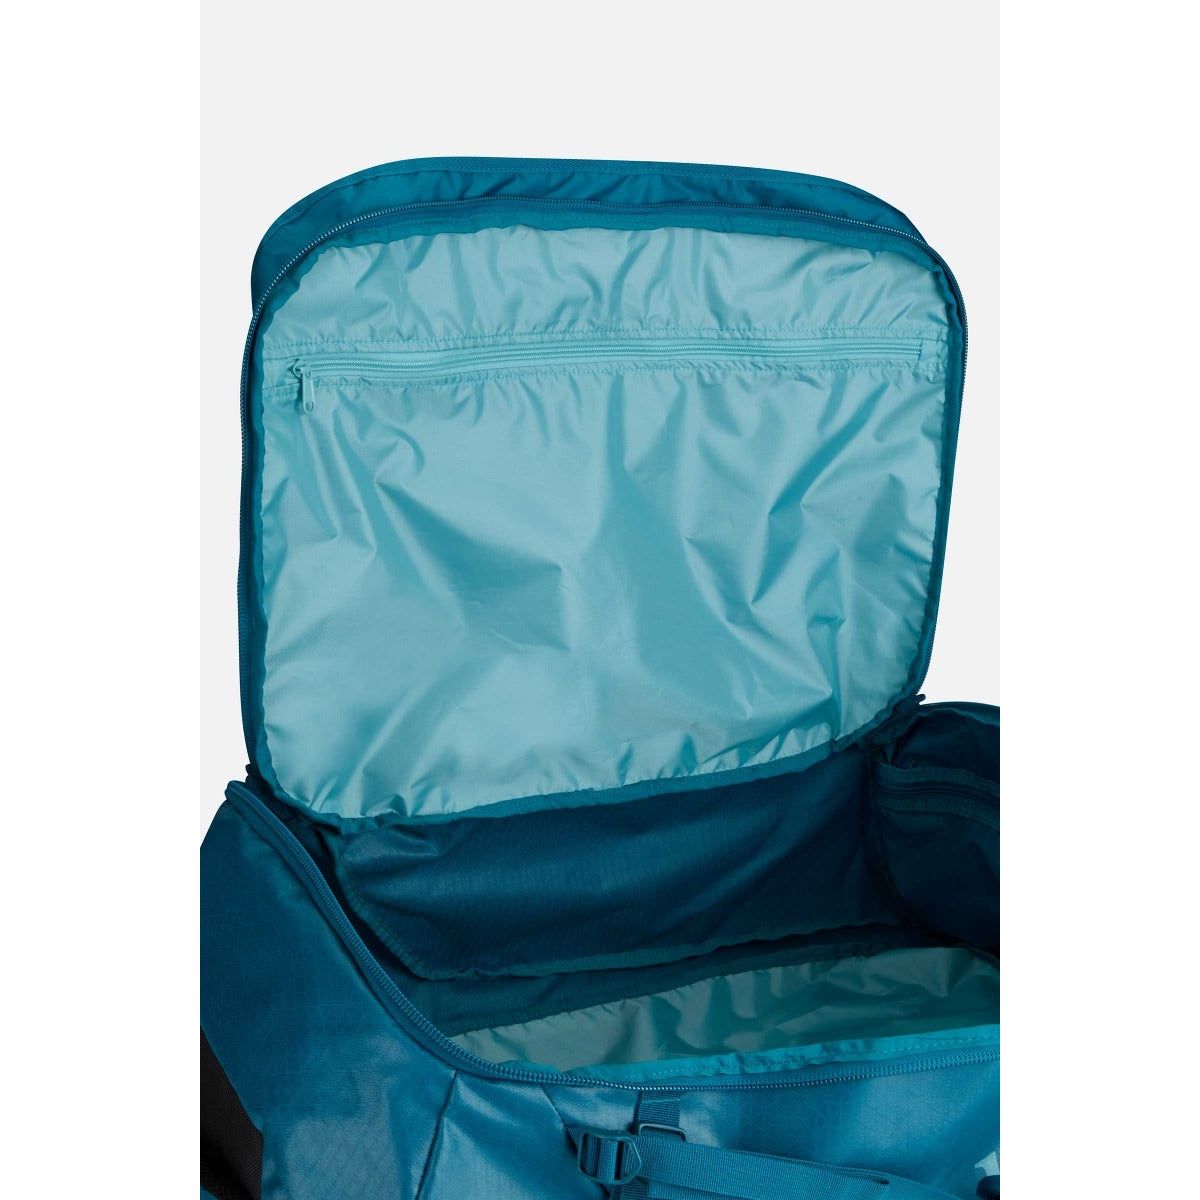 Rab Escape Kit Bag 90 Litre